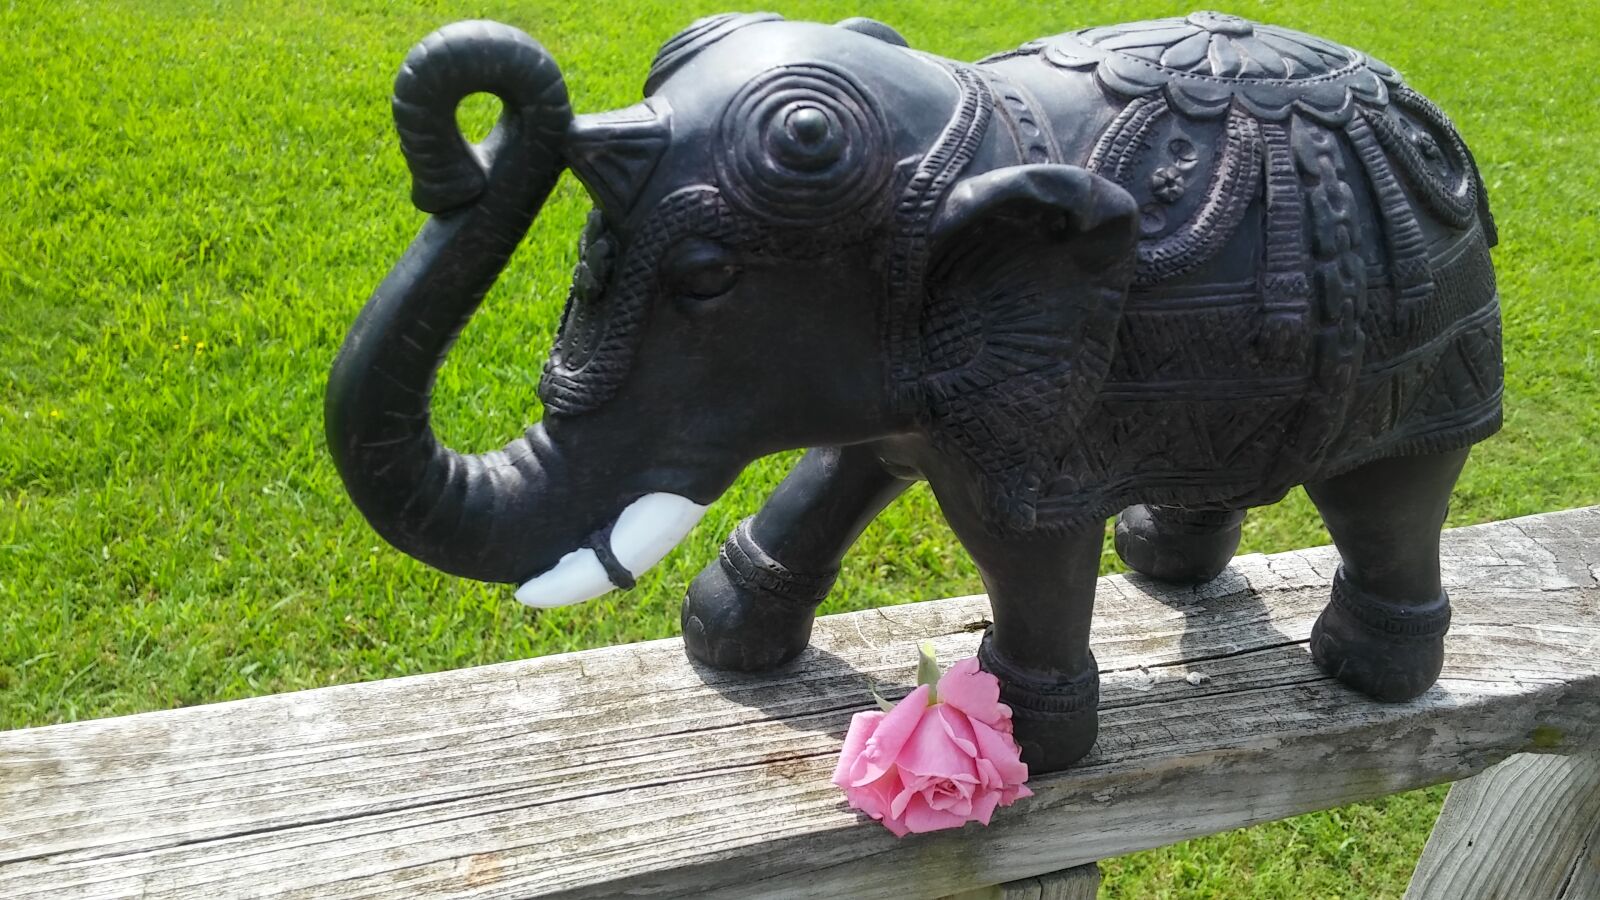 LG G STYLO sample photo. Symbolic, elephant, pink rose photography